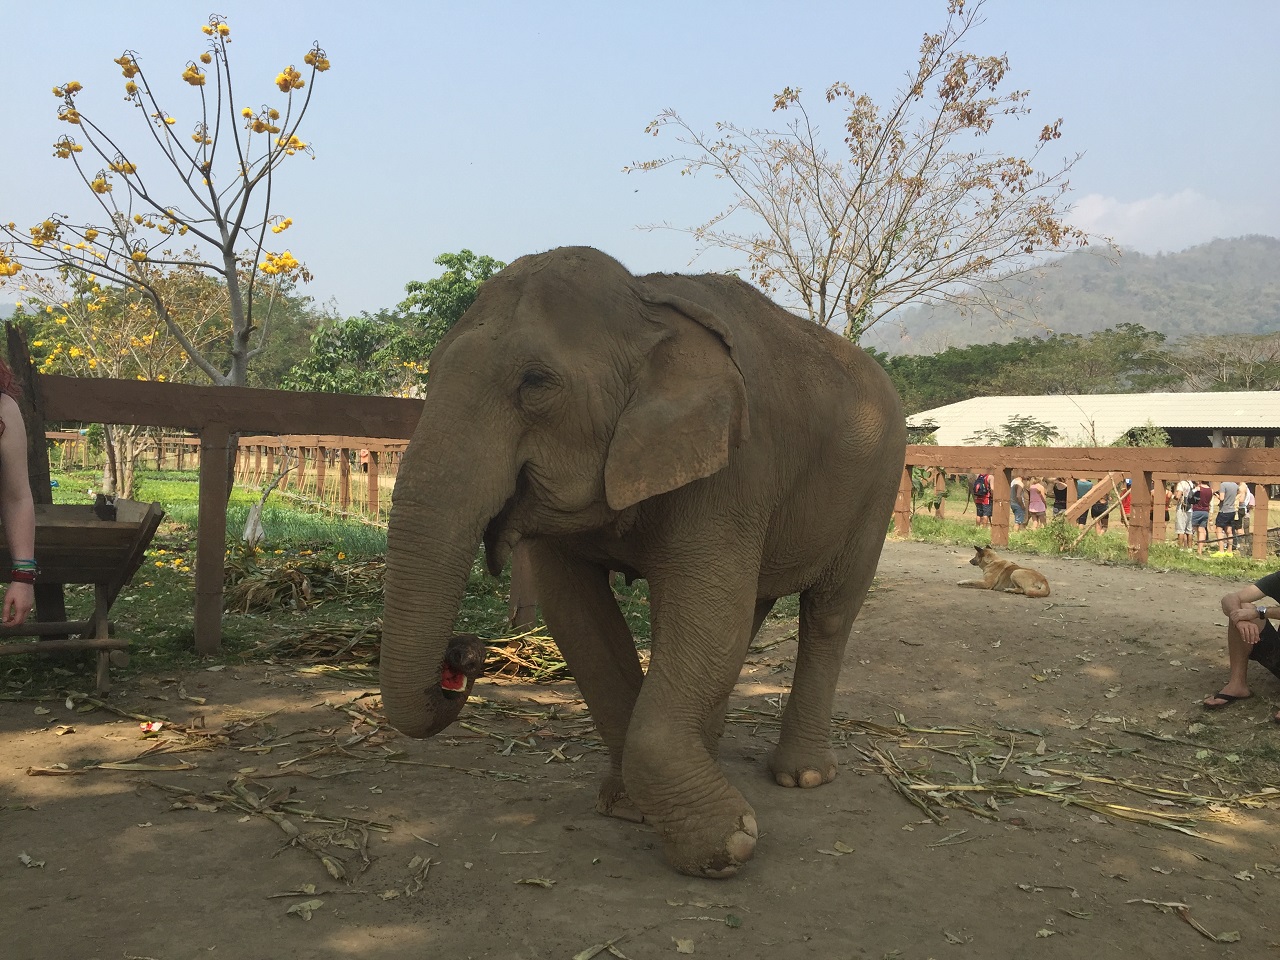 앞다리가 불구가 된 코끼리. 벌목과 관광산업에 쓰이던 코끼리들은 다리와 발에 질병이 있는 경우가 많다. 